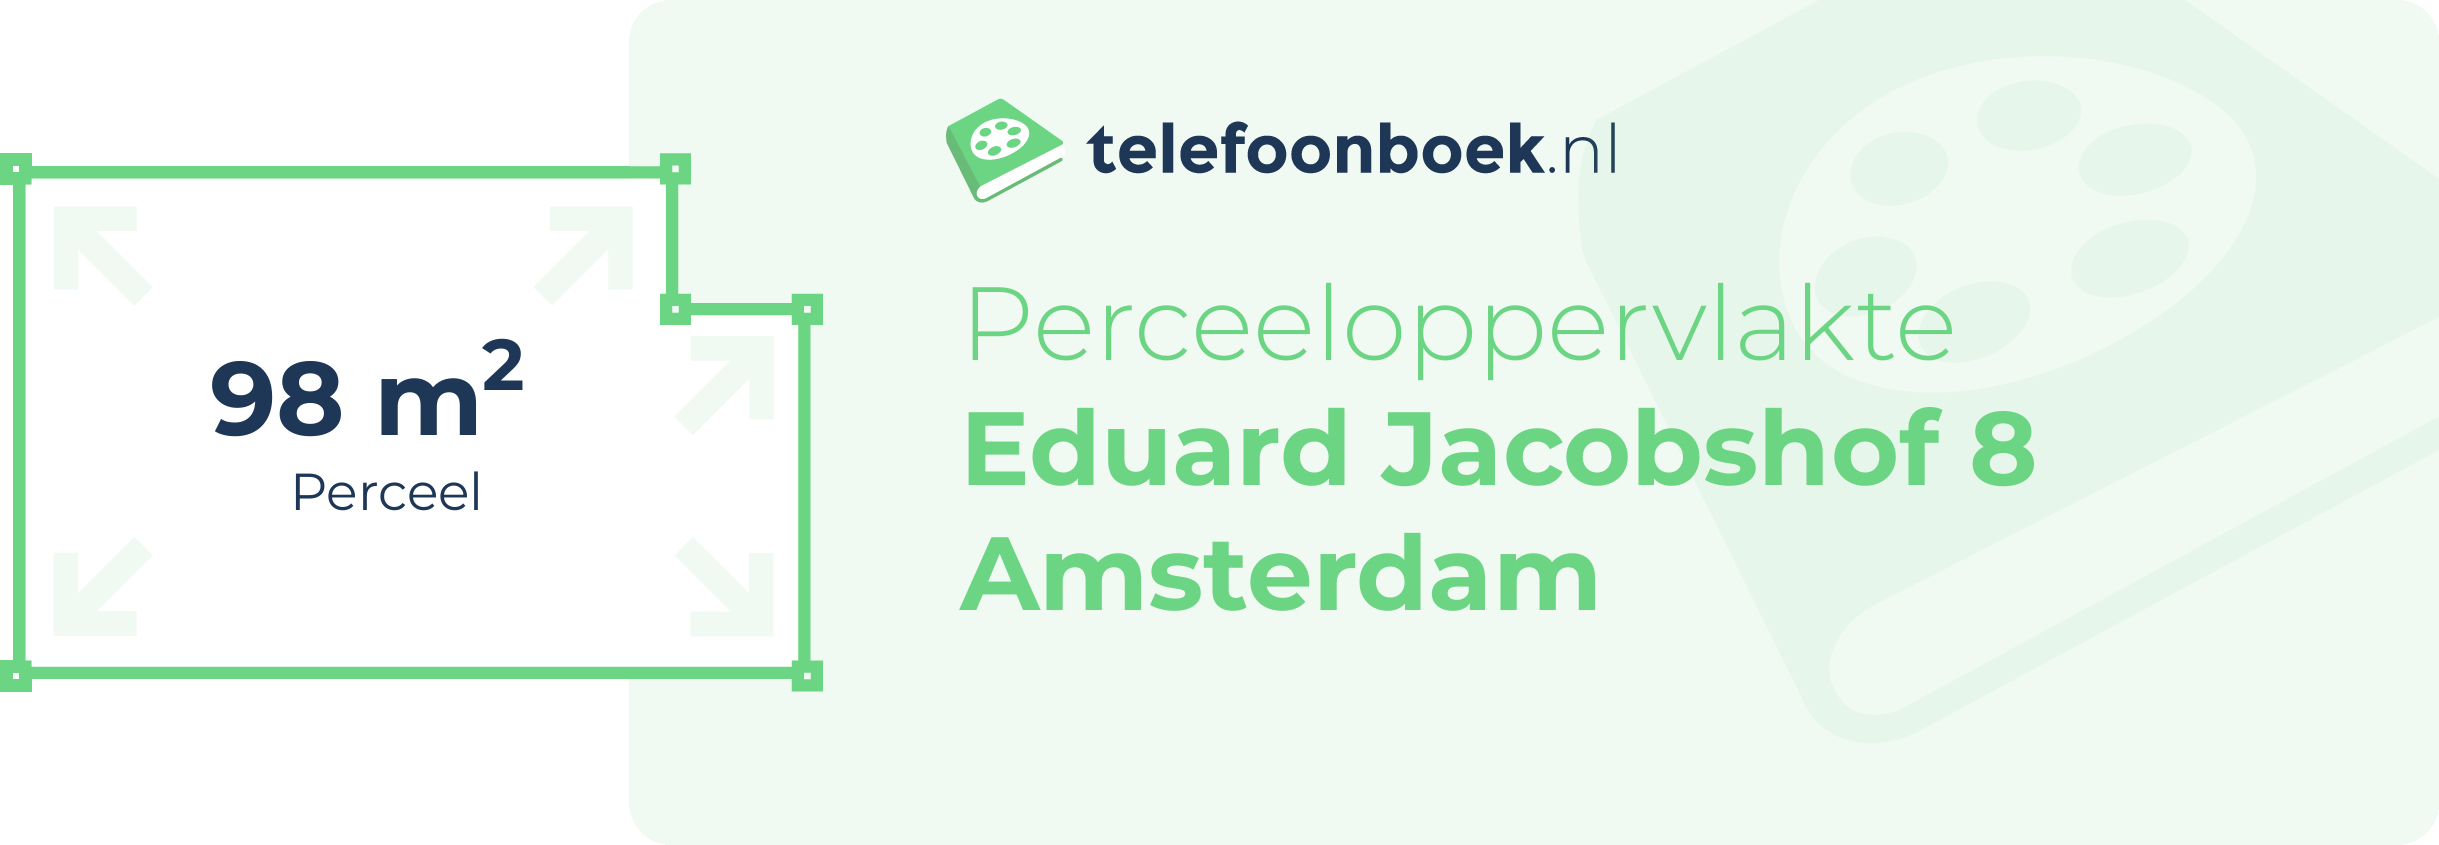 Perceeloppervlakte Eduard Jacobshof 8 Amsterdam